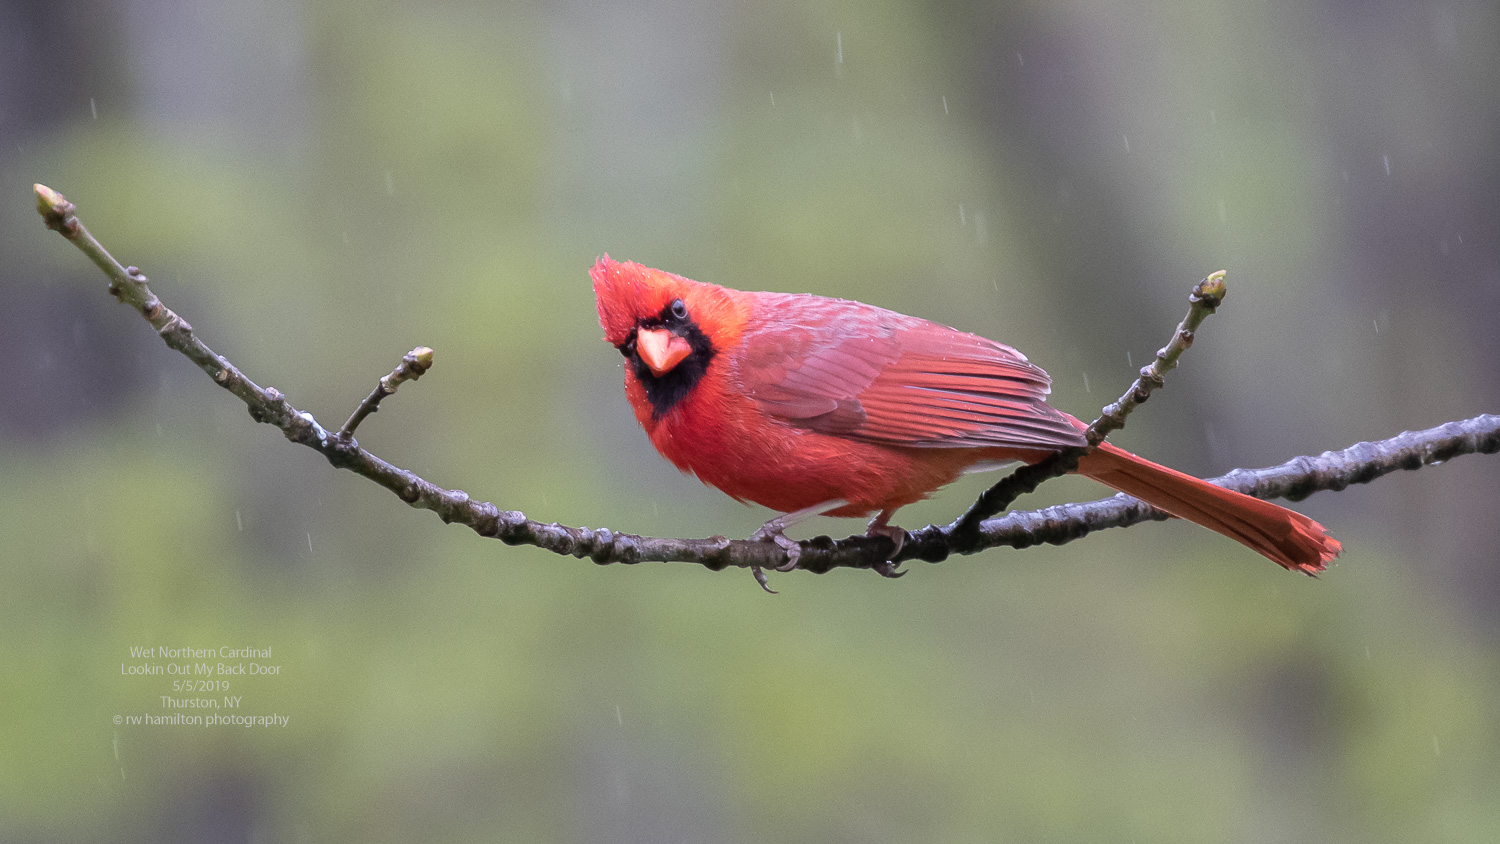 Wet Northern Cardinal